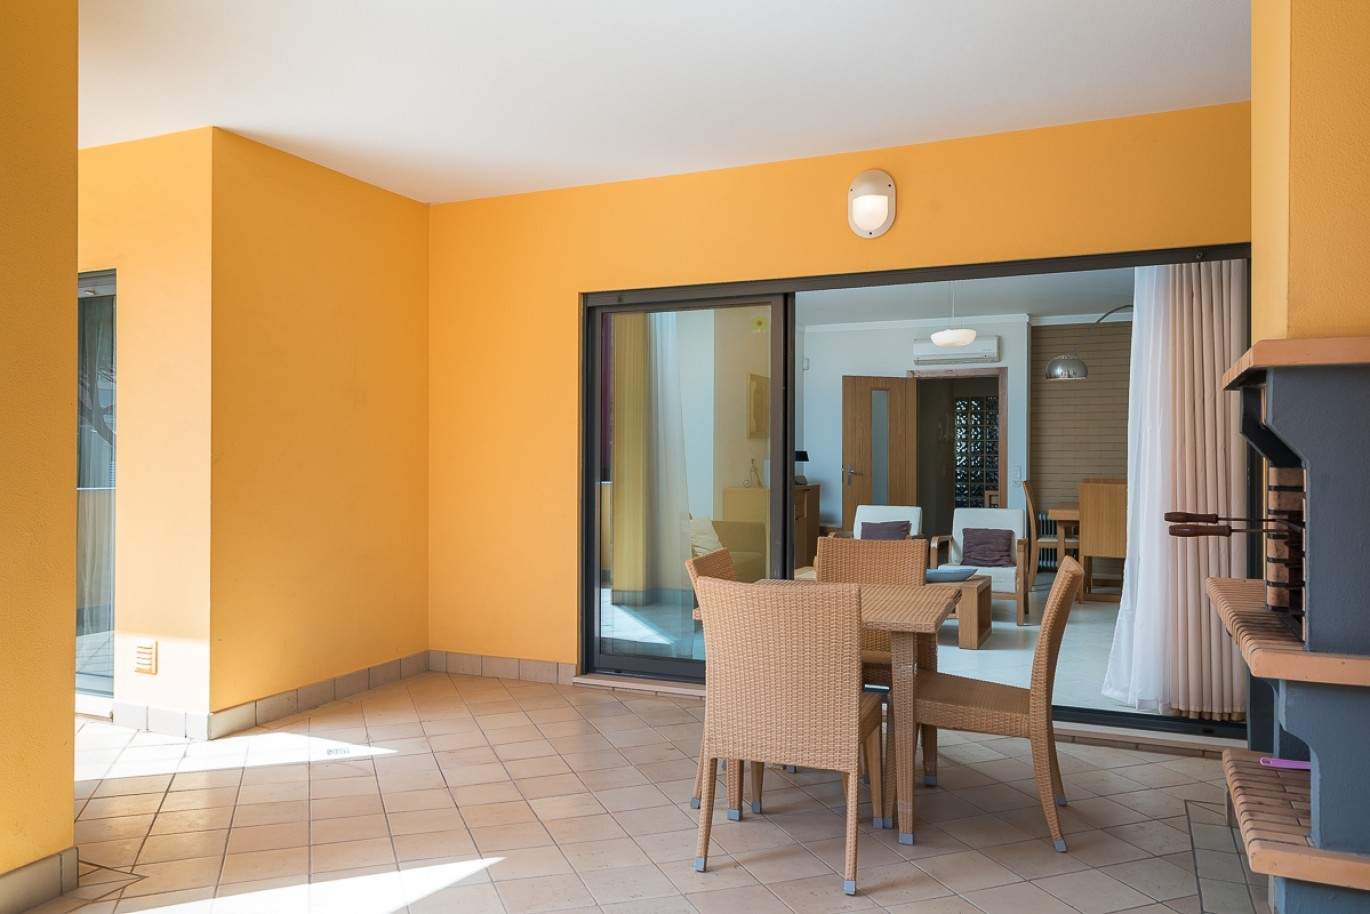 Wohnung zum Verkauf, pool, in der Nähe von Strand und golf, Vilamoura, Algarve, Portugal_78070